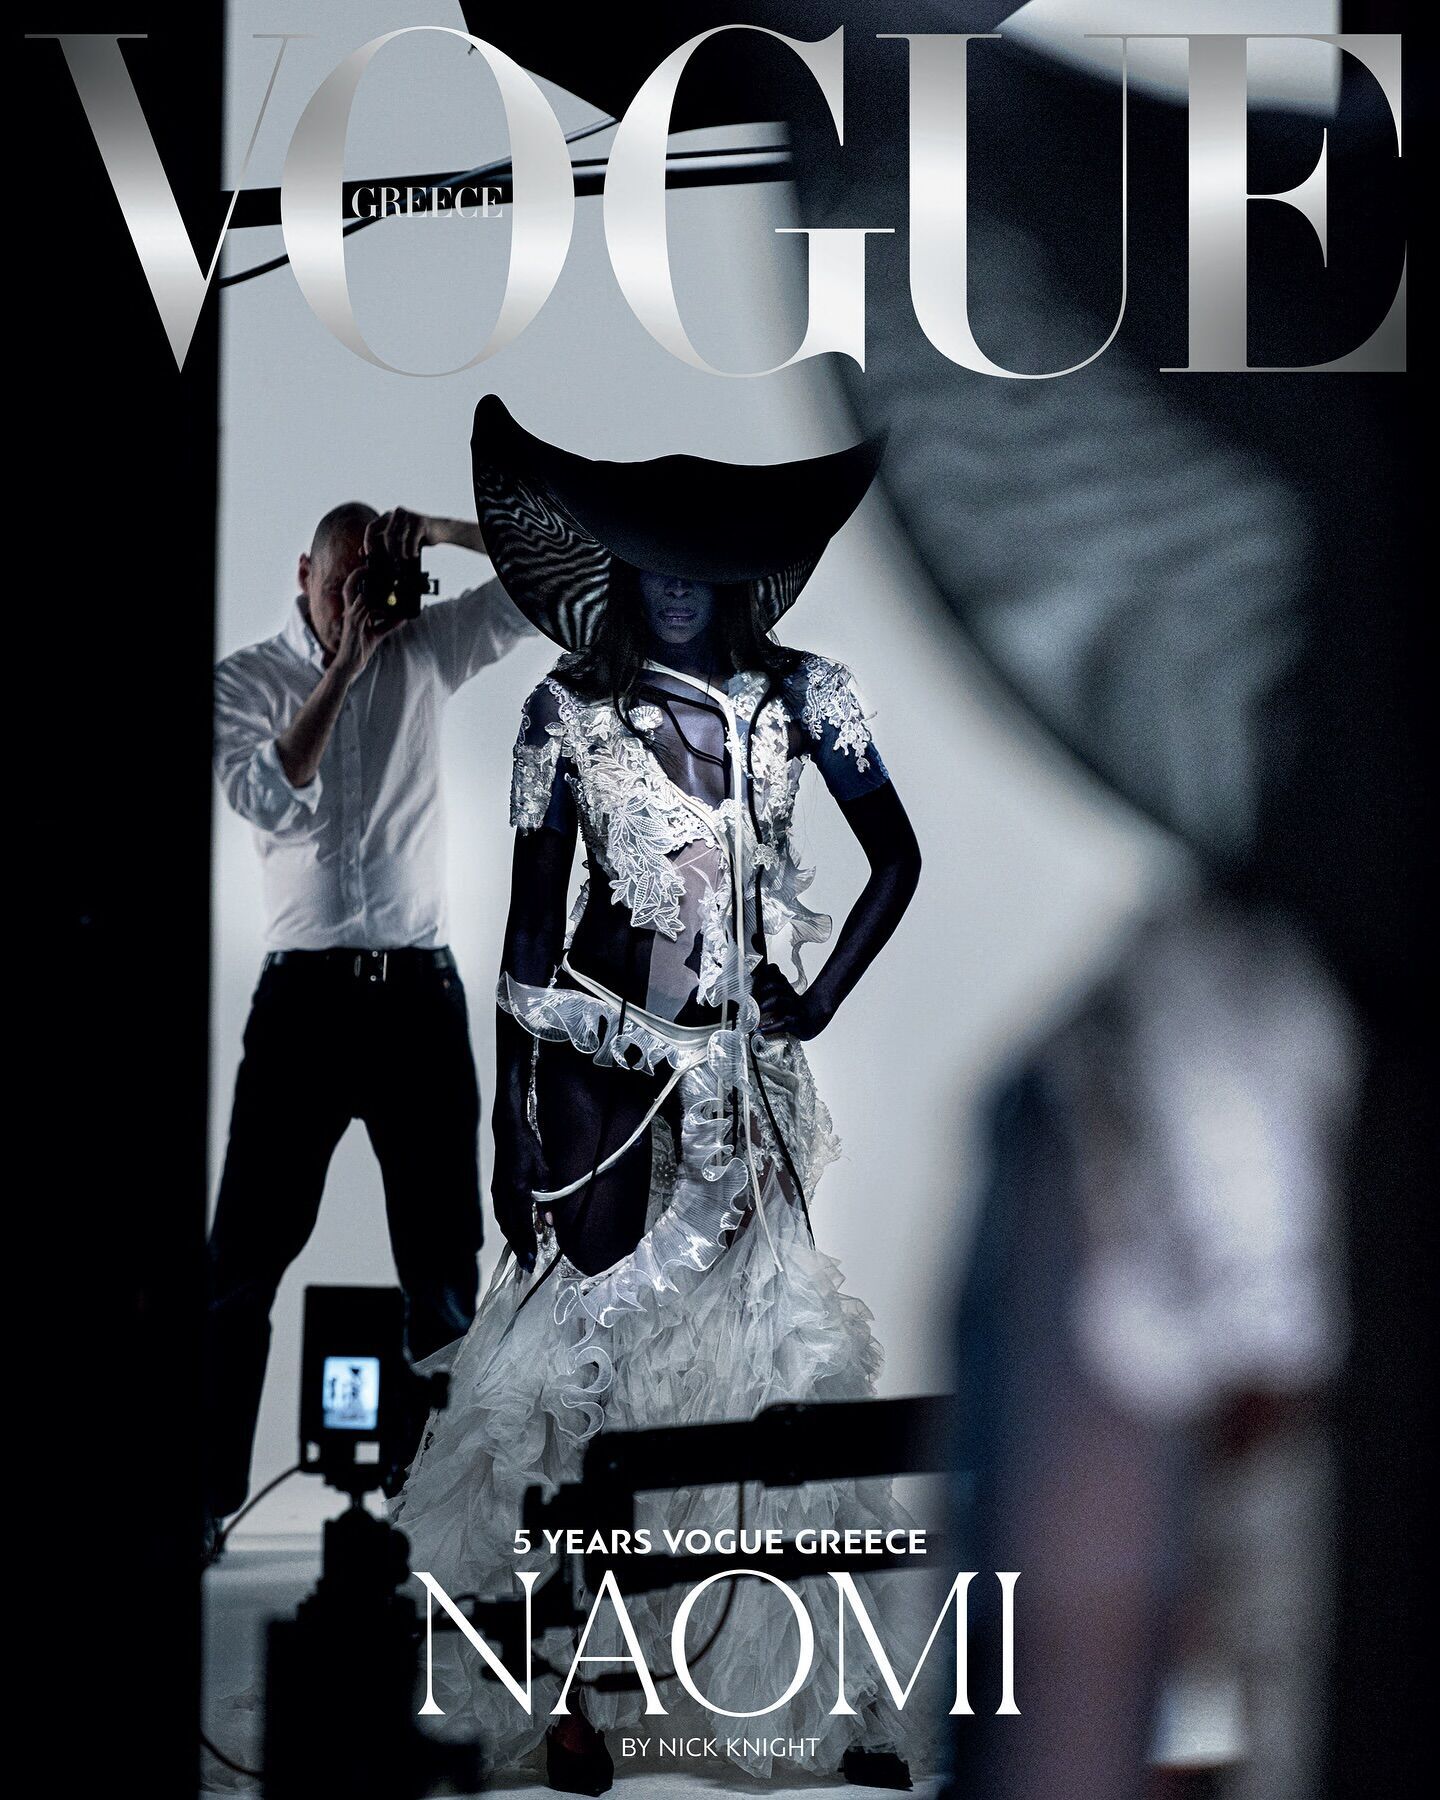 53-letnia Naomi Campbell wystąpiła dla Vogue na ujawniających zdjęciach. Zdjęcie